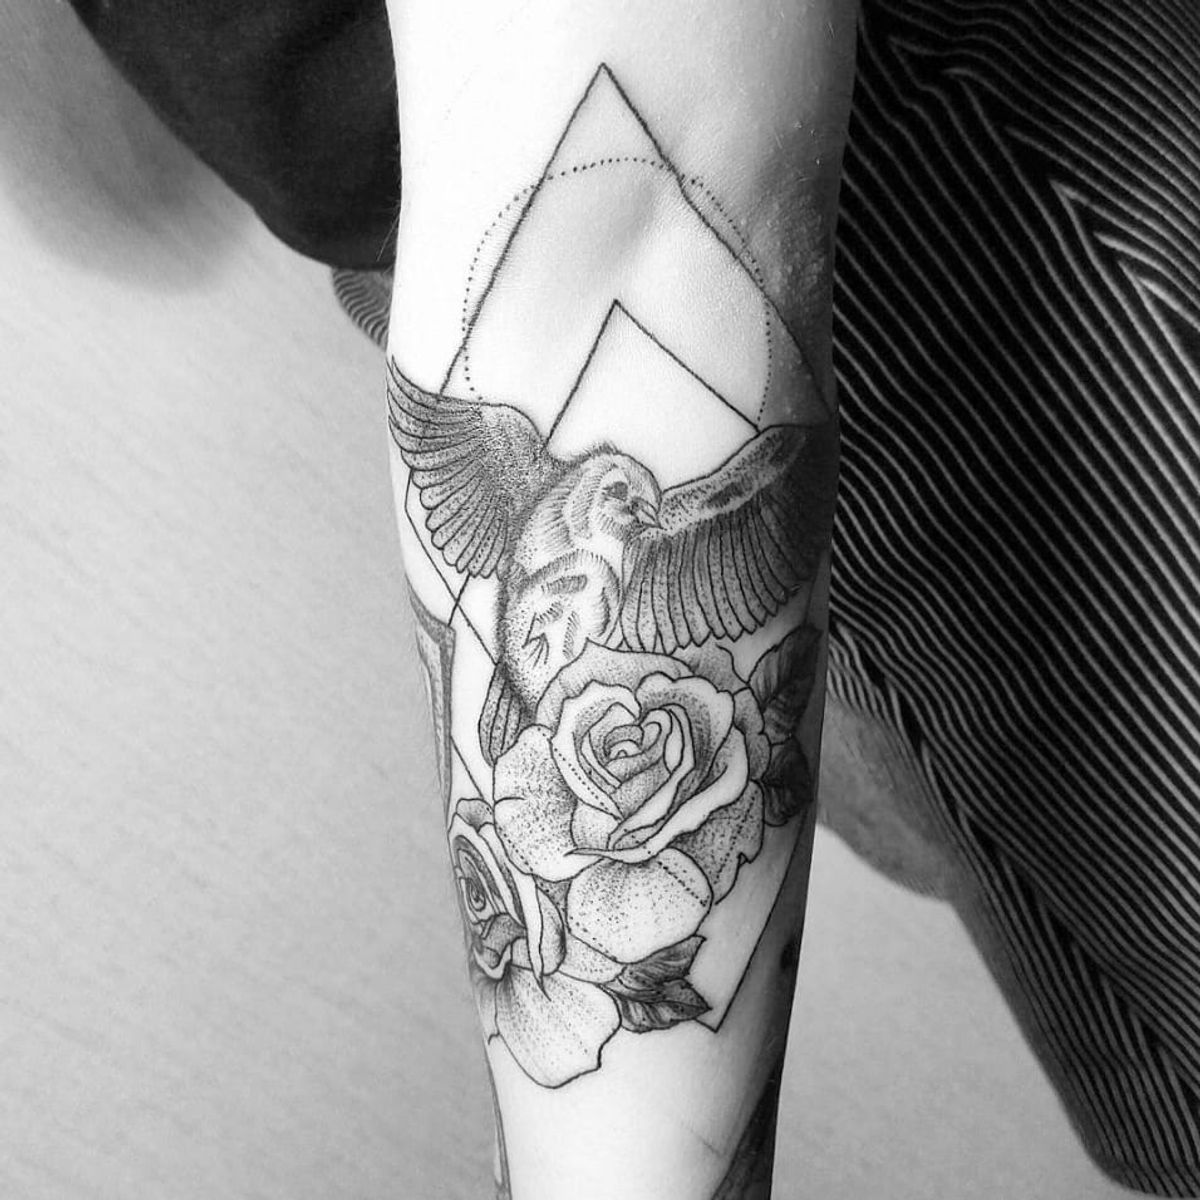 Tattoo uploaded by Paula Zeikmane • Beautiful underboob tattoo